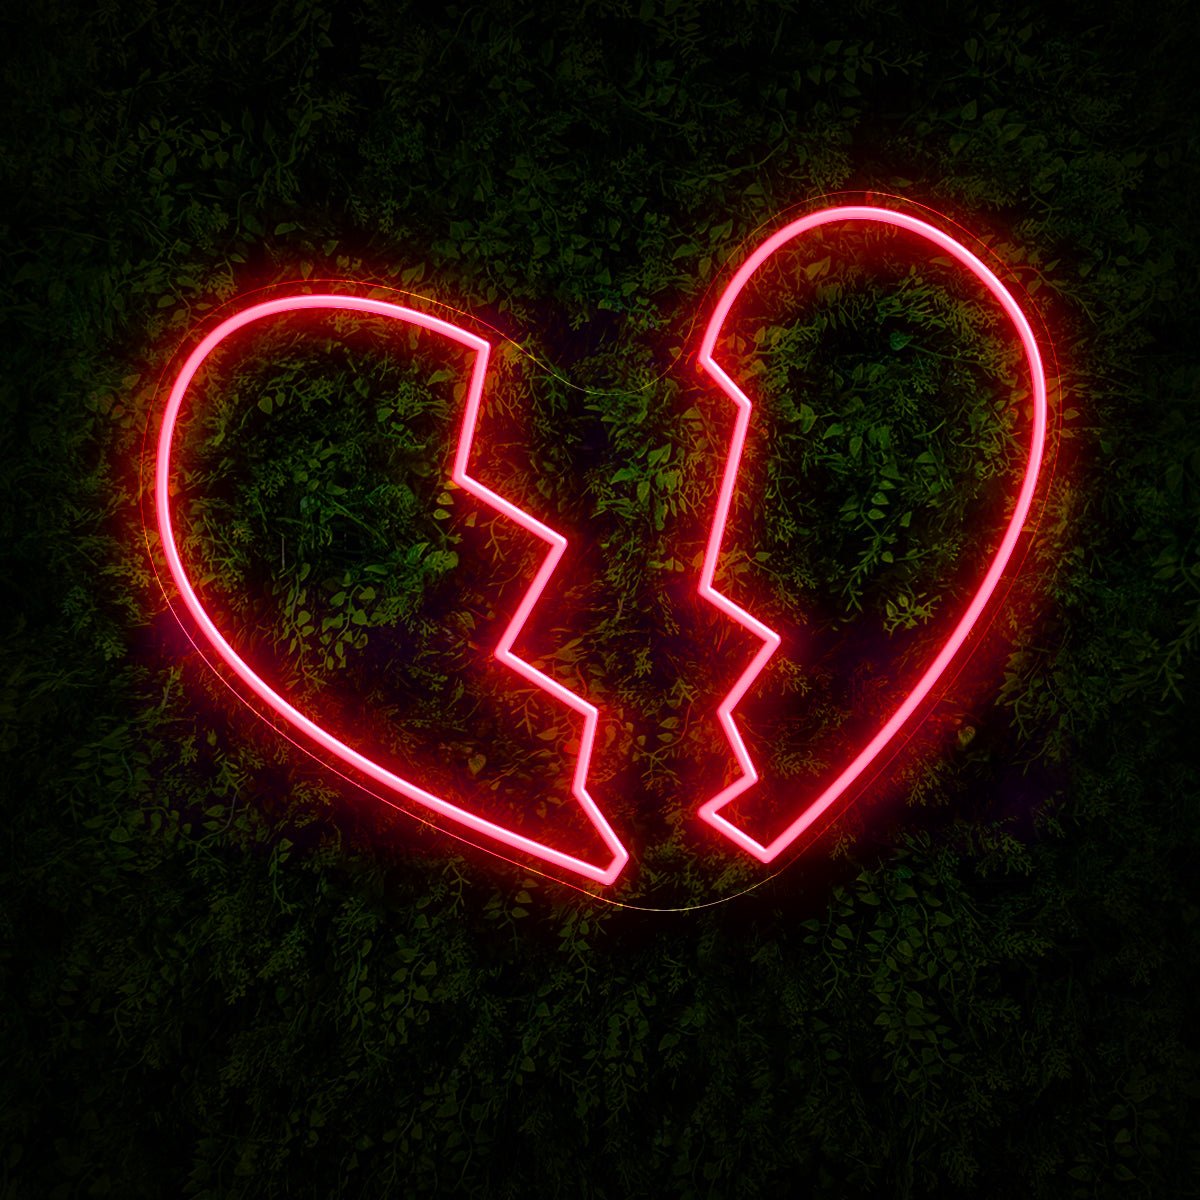 Heart Break Led Neon Sign - Reels Custom